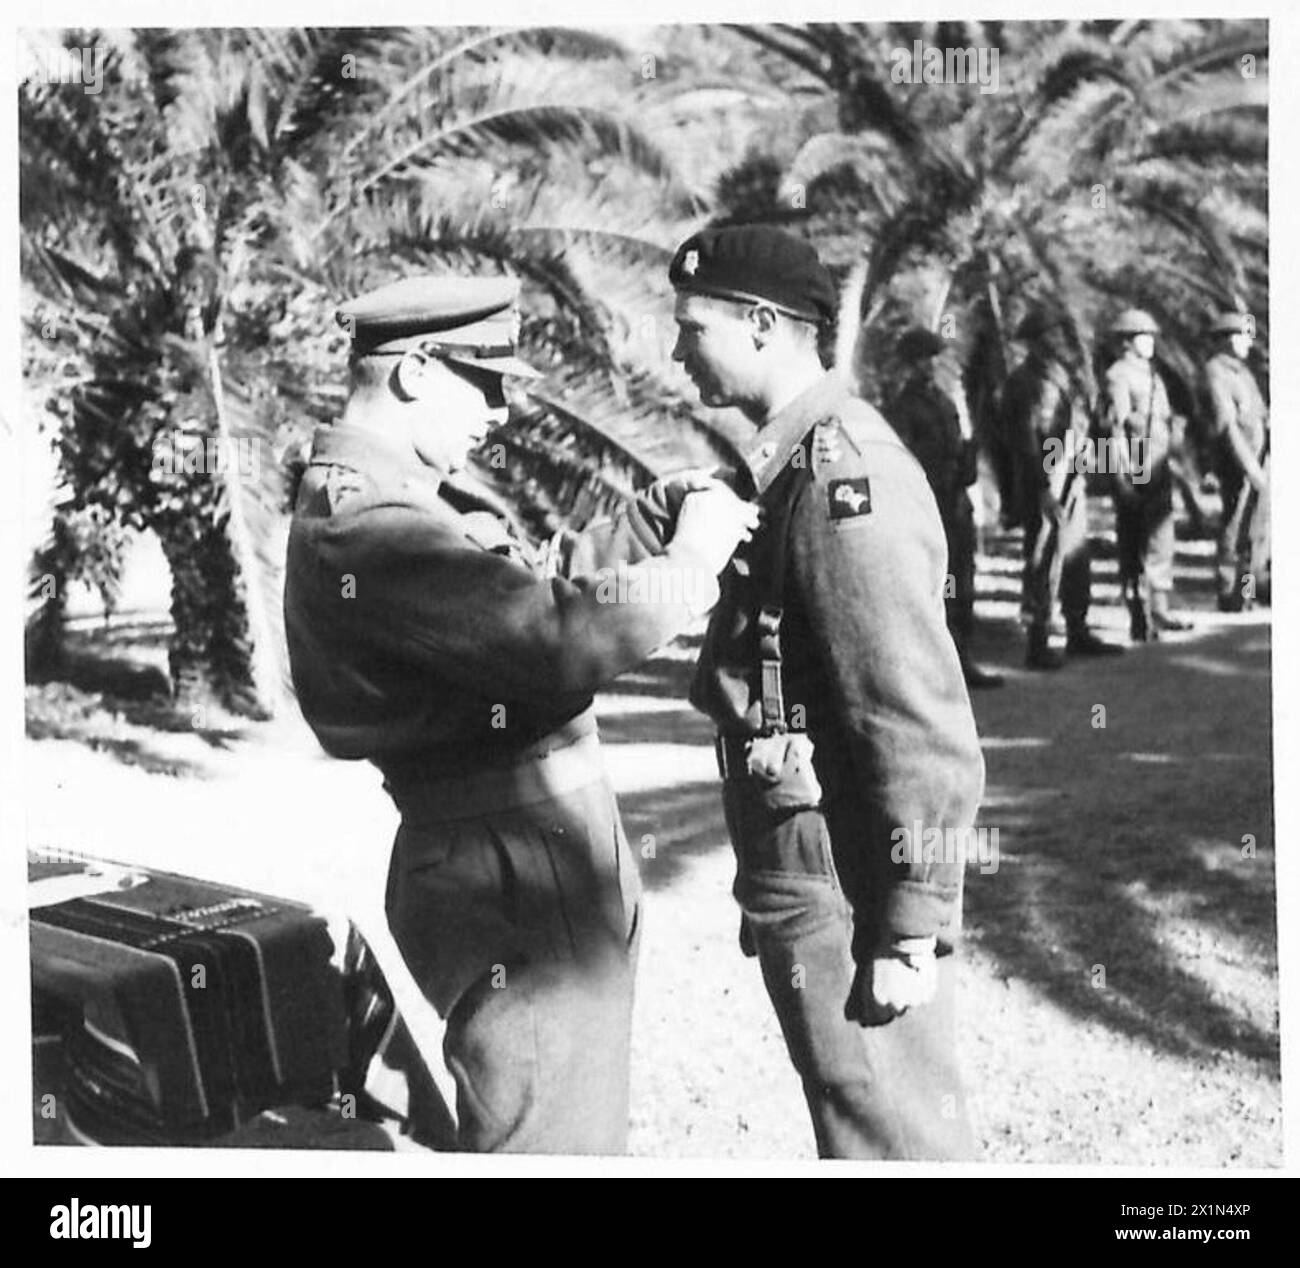 L'ESERCITO BRITANNICO NELLA CAMPAGNA DI TUNISIA, NOVEMBRE 1942-MAGGIO 1943 - il generale Anderson decora il colonnello R. A. Hull del 17th/21st Lancers con il DSO. Le prime decorazioni ad essere assegnate per la galanteria sul campo durante la campagna di Tunisia sono state presentate agli ufficiali e alle truppe della prima Armata britannica dal generale Kenneth Anderson, comandante dell'esercito, presso il V Corps Signals Training Centre di Souk el Khemis, 15 gennaio 1943, British Army, British Army, 1st Army, British Army, V Corps, British Army, 17th/21st Lancers, Anderson, Kenneth Arthur Noel Foto Stock